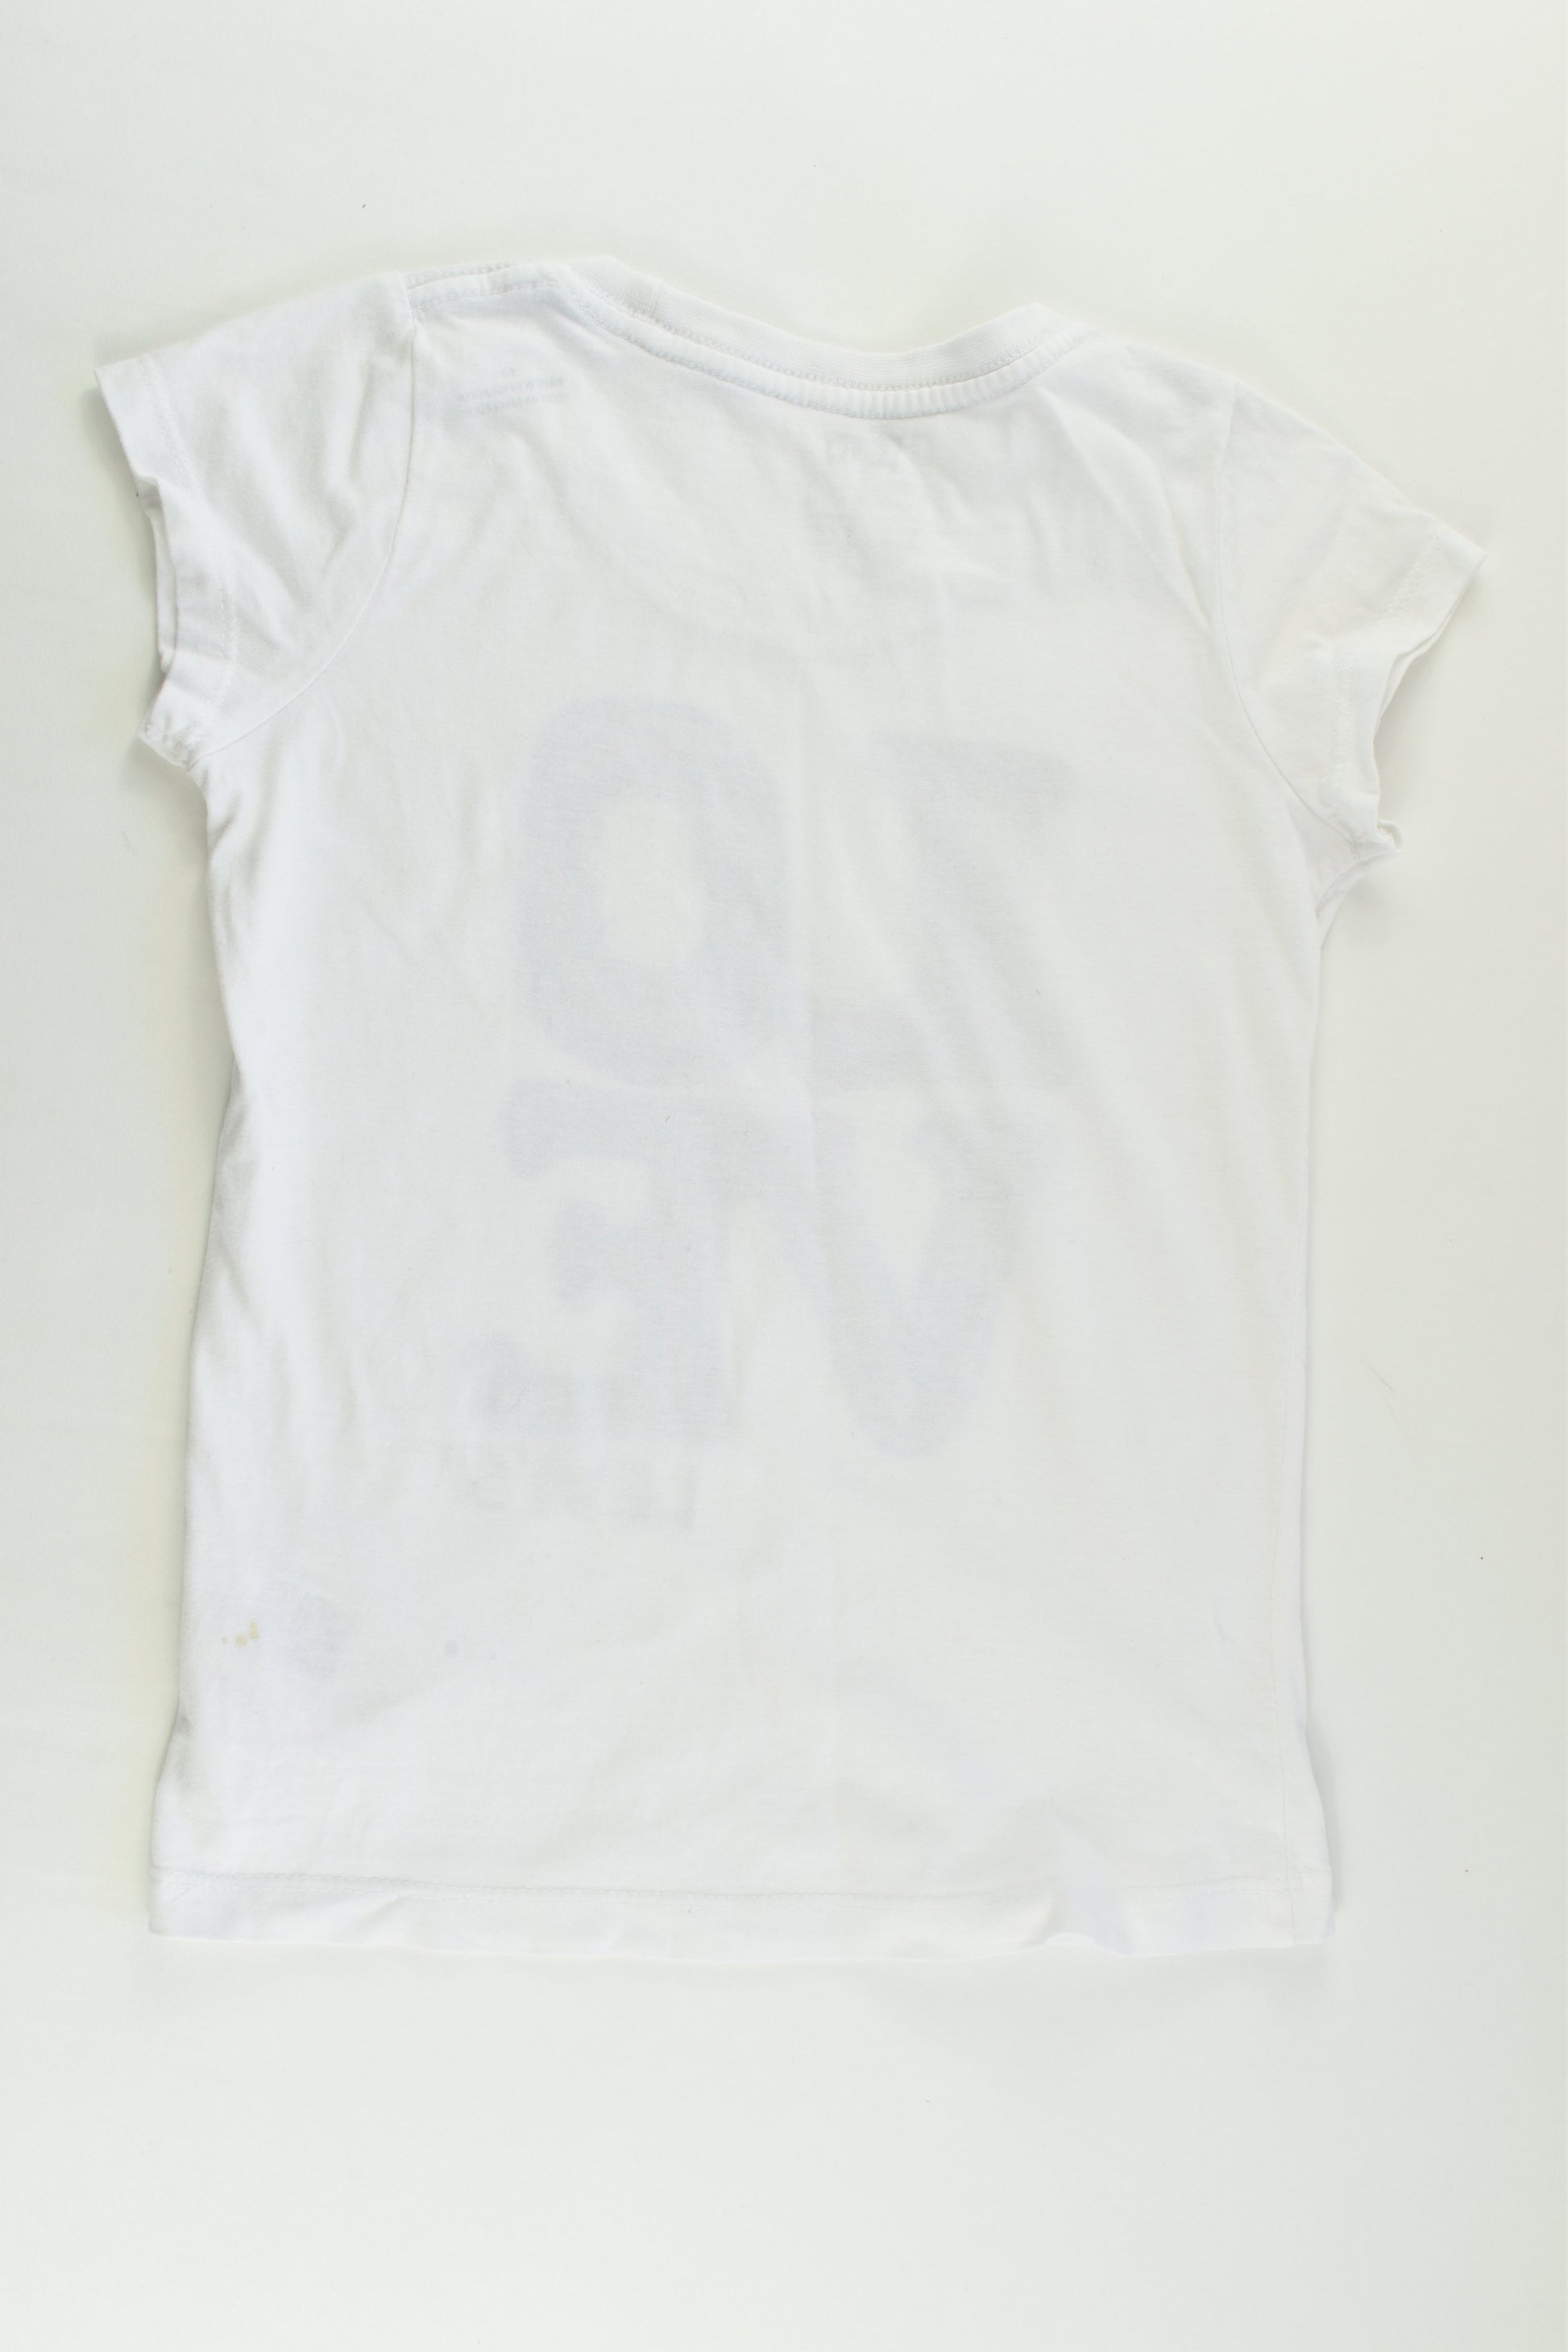 Levi's Size 6-7 'Love' T-shirt